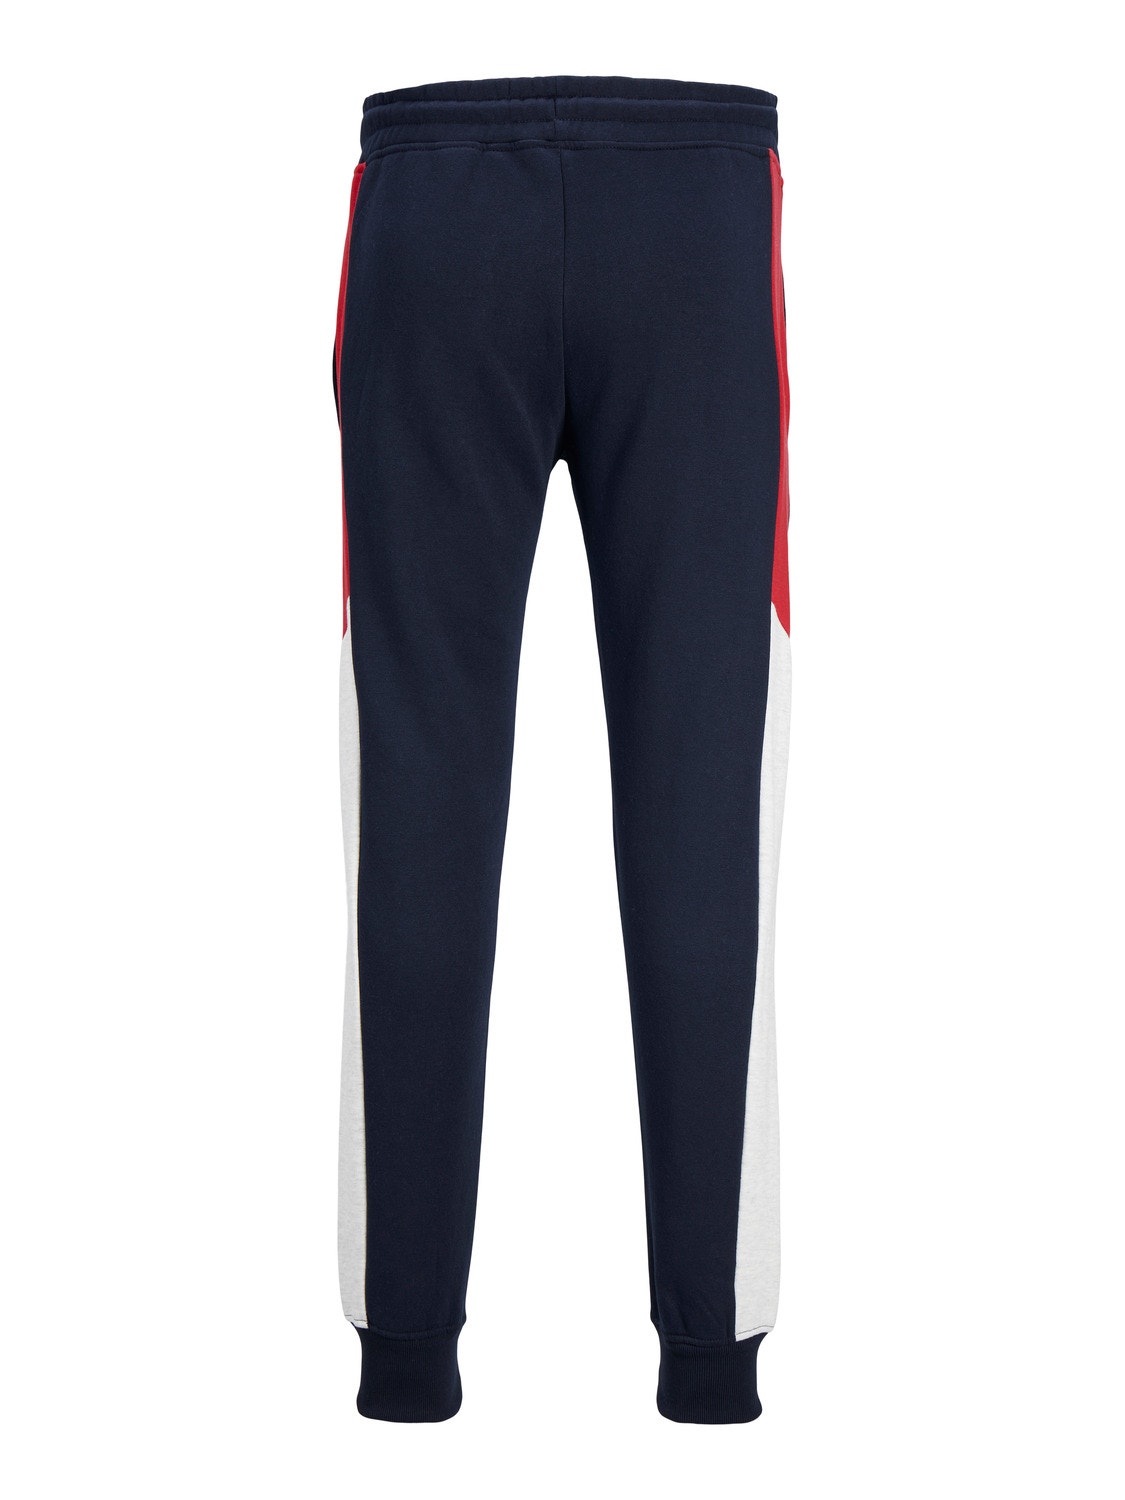 Jack & Jones Slim Fit Spodnie dresowe -Navy Blazer - 12236372